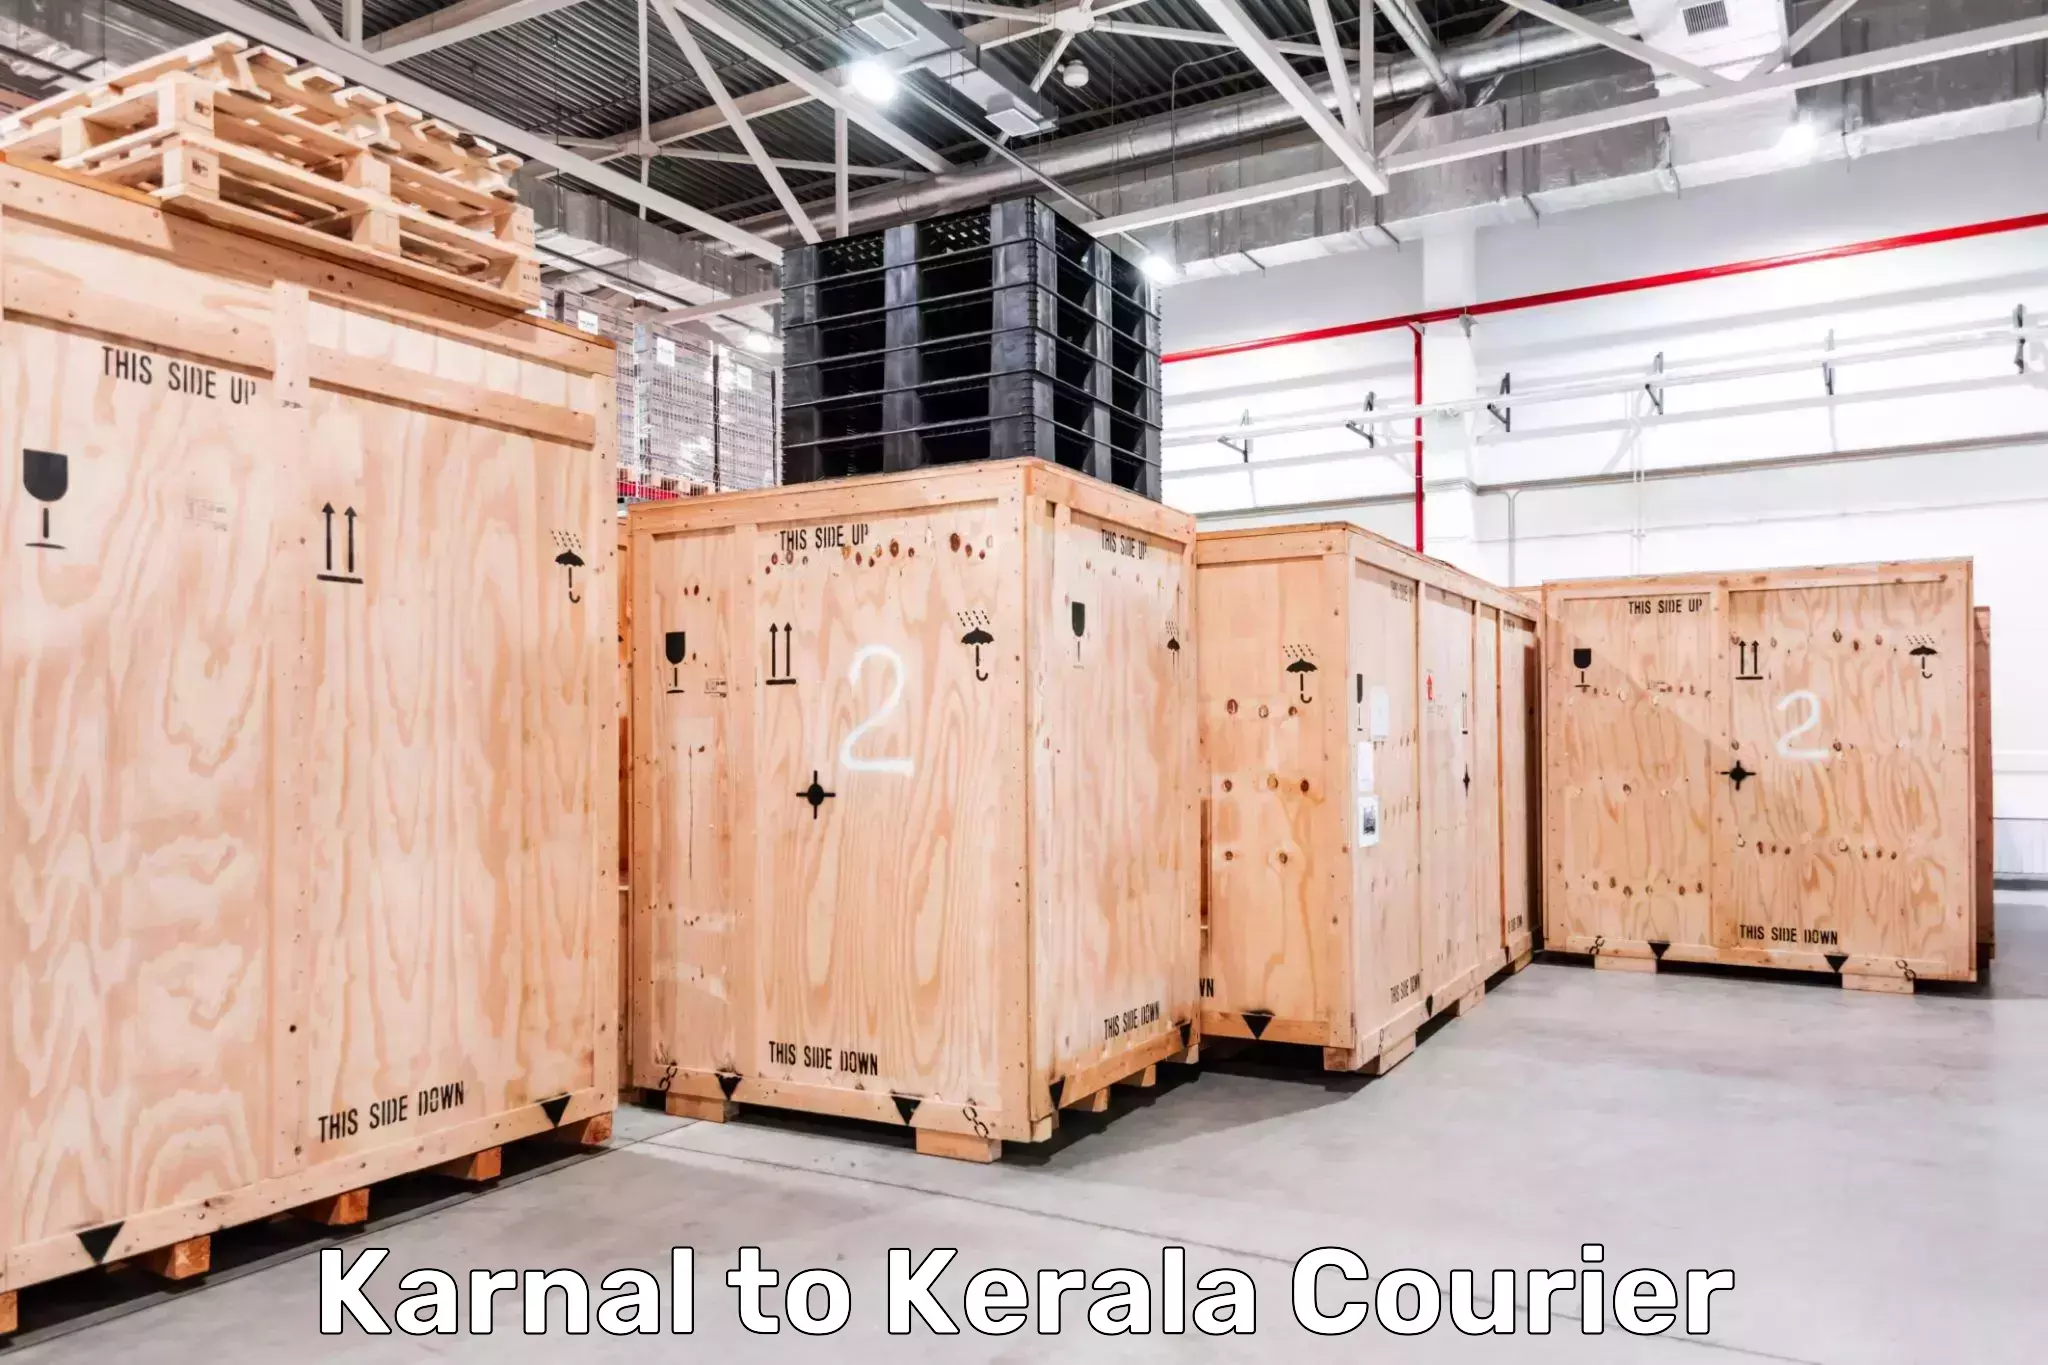 Next-day freight services Karnal to Kakkur